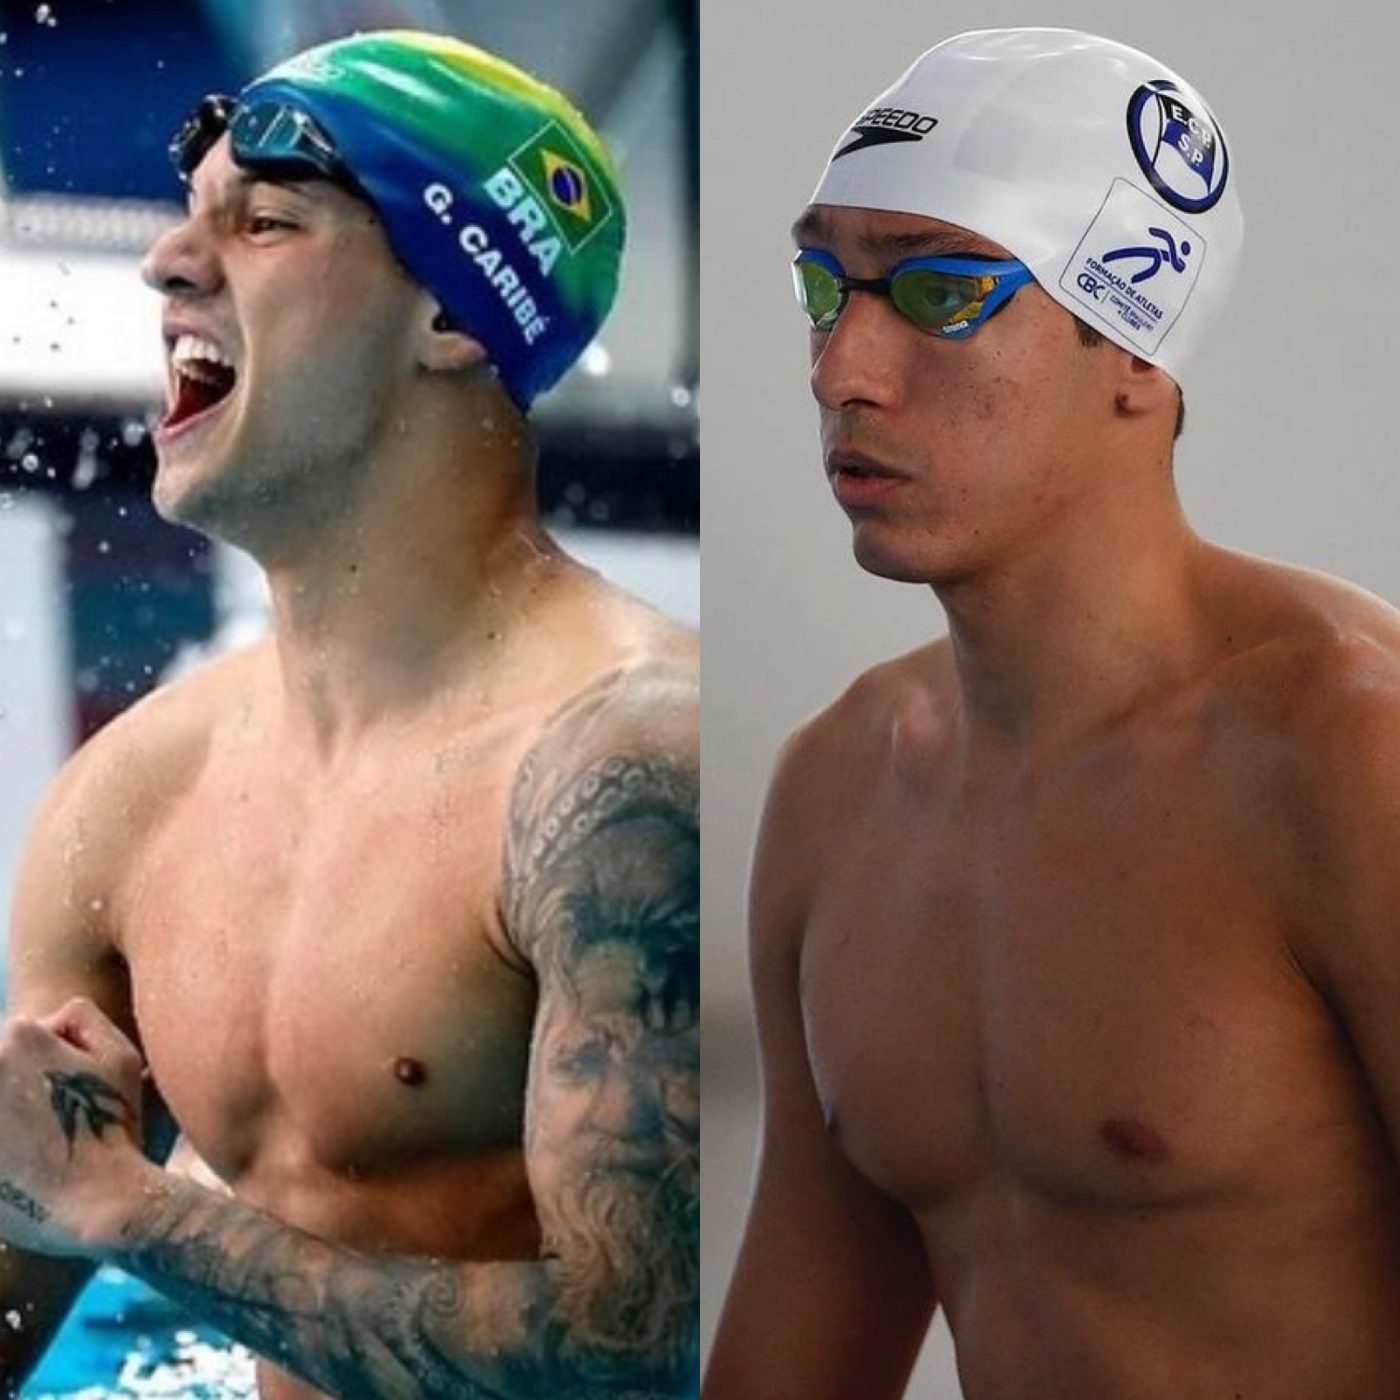 Nadadores baianos disputam a mesma prova nas Olimpíadas pela primeira vez; confira a agenda deste sábado (27)